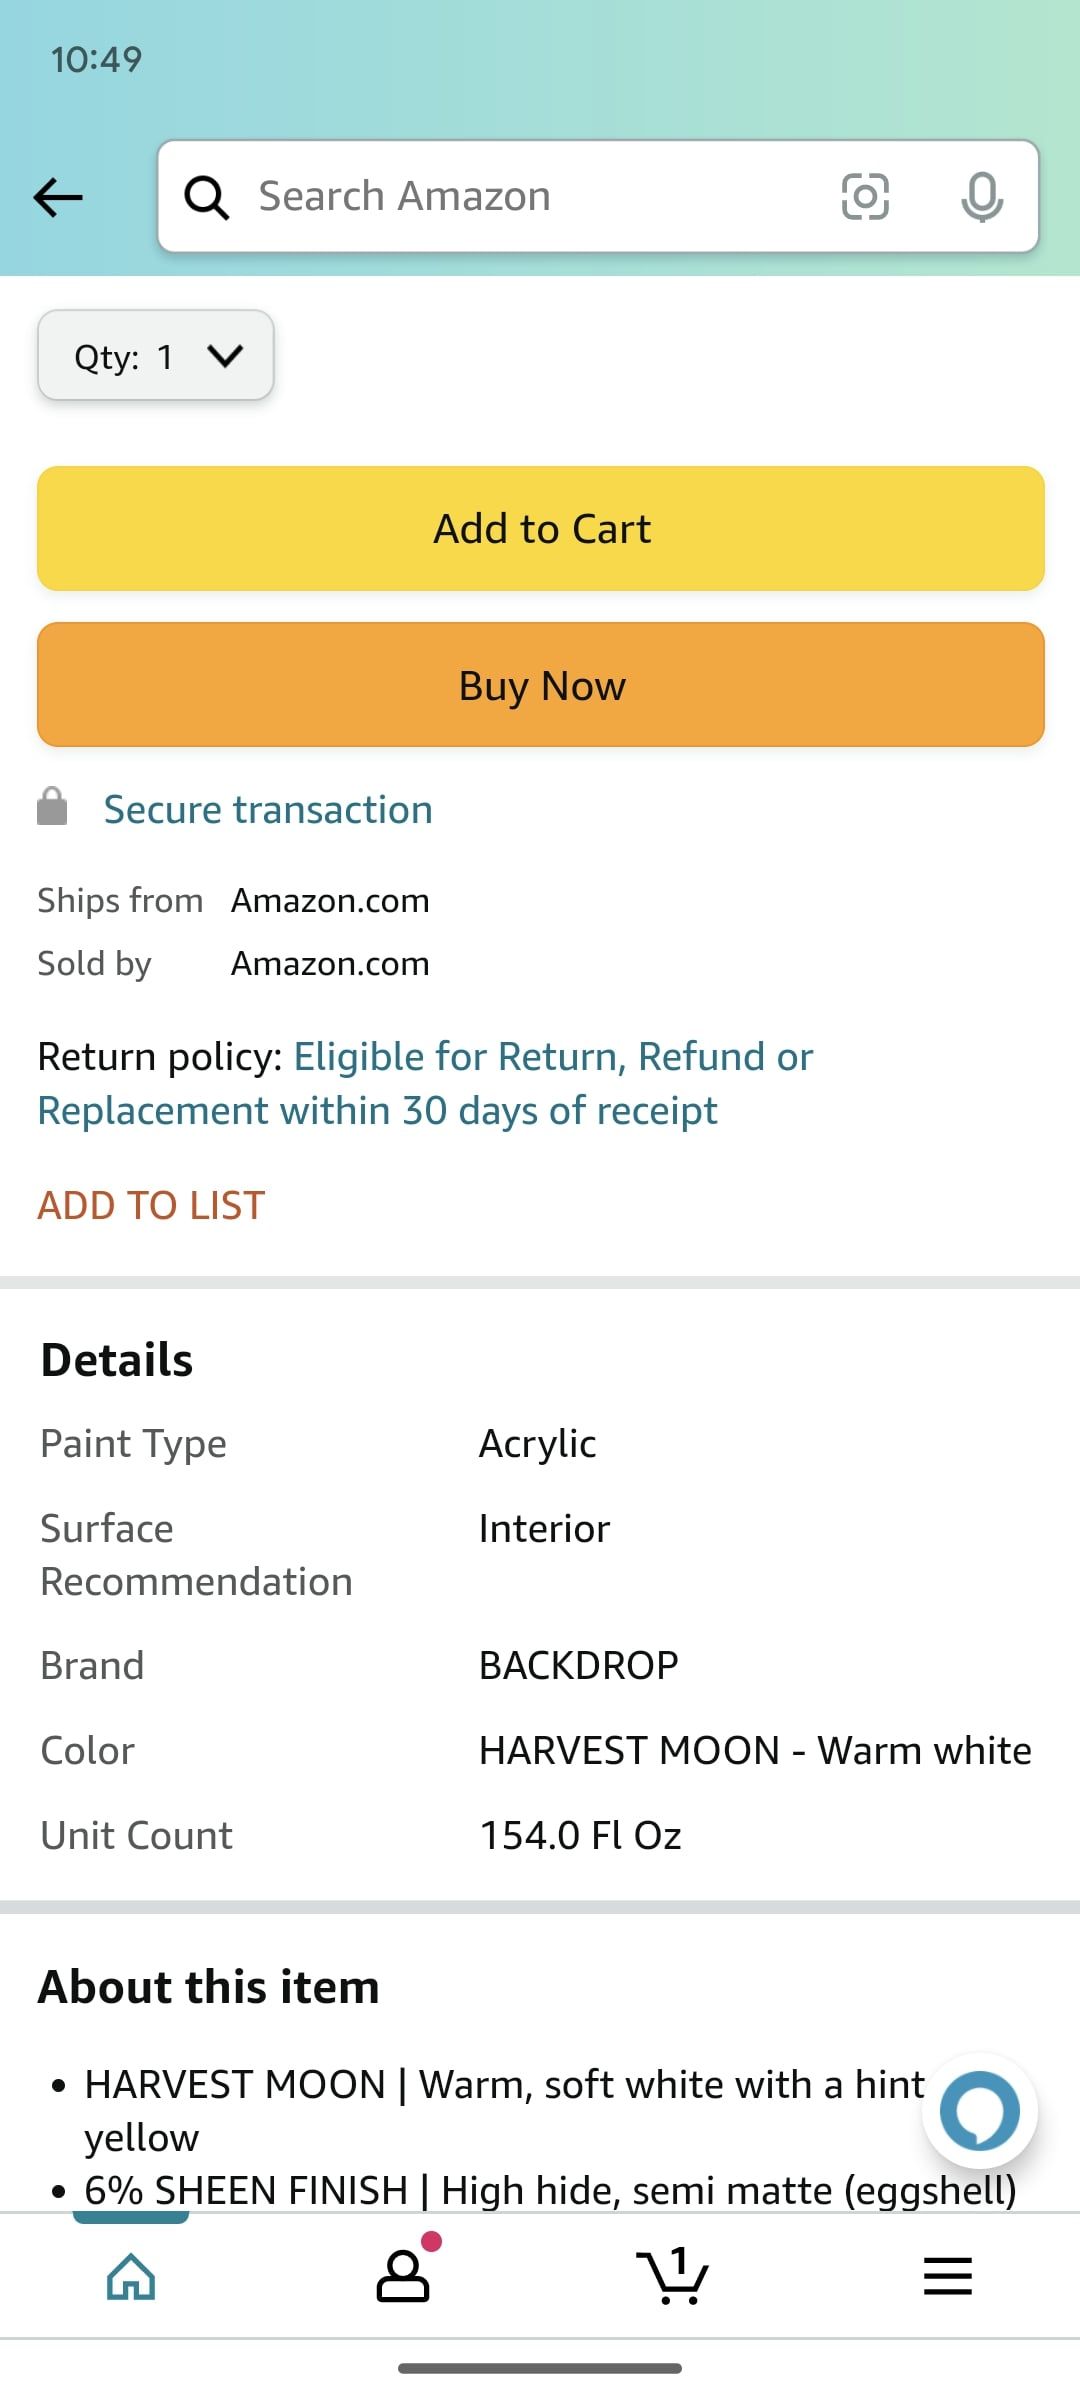 aplicativo de compras da Amazon mostrando a seção de detalhes do item